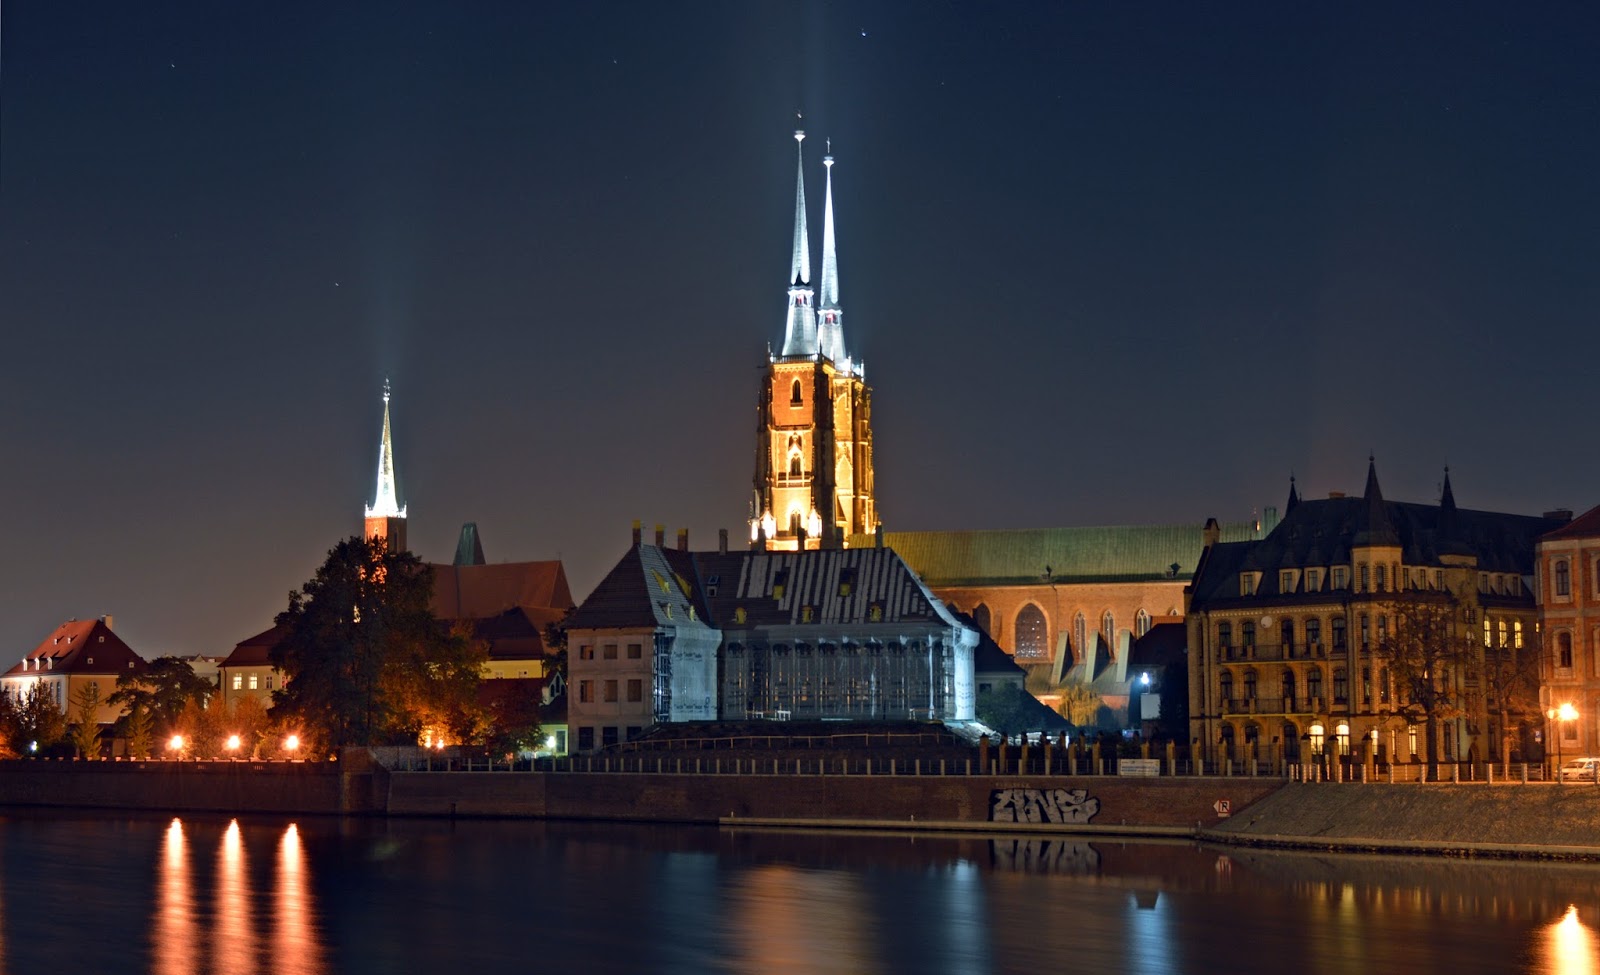 Wrocław nocą